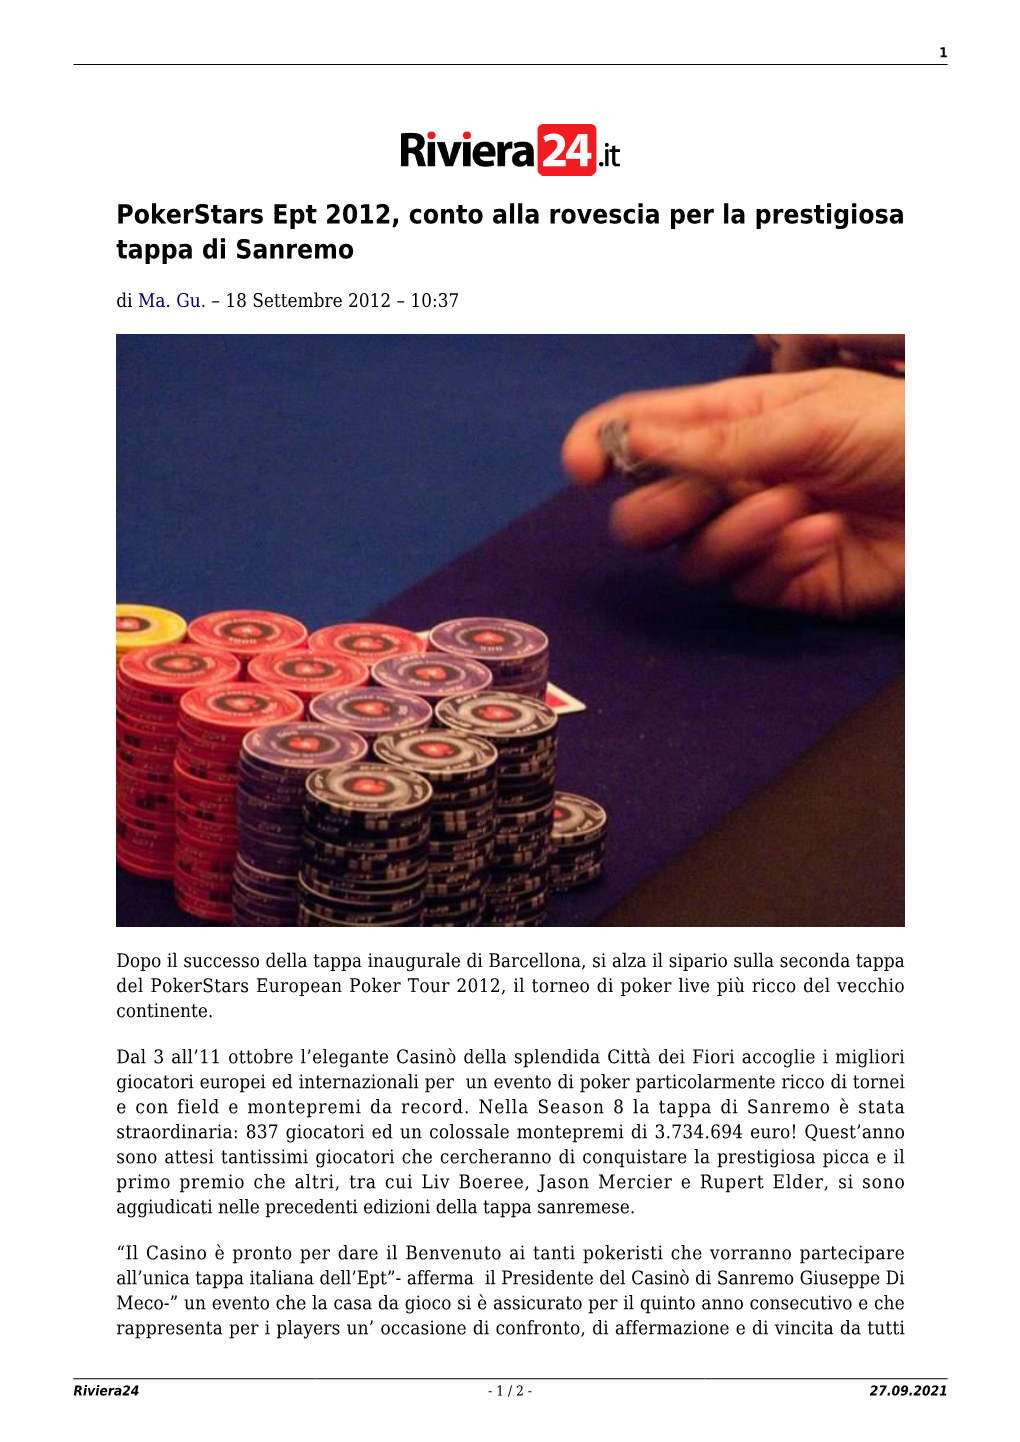 Pokerstars Ept 2012, Conto Alla Rovescia Per La Prestigiosa Tappa Di Sanremo